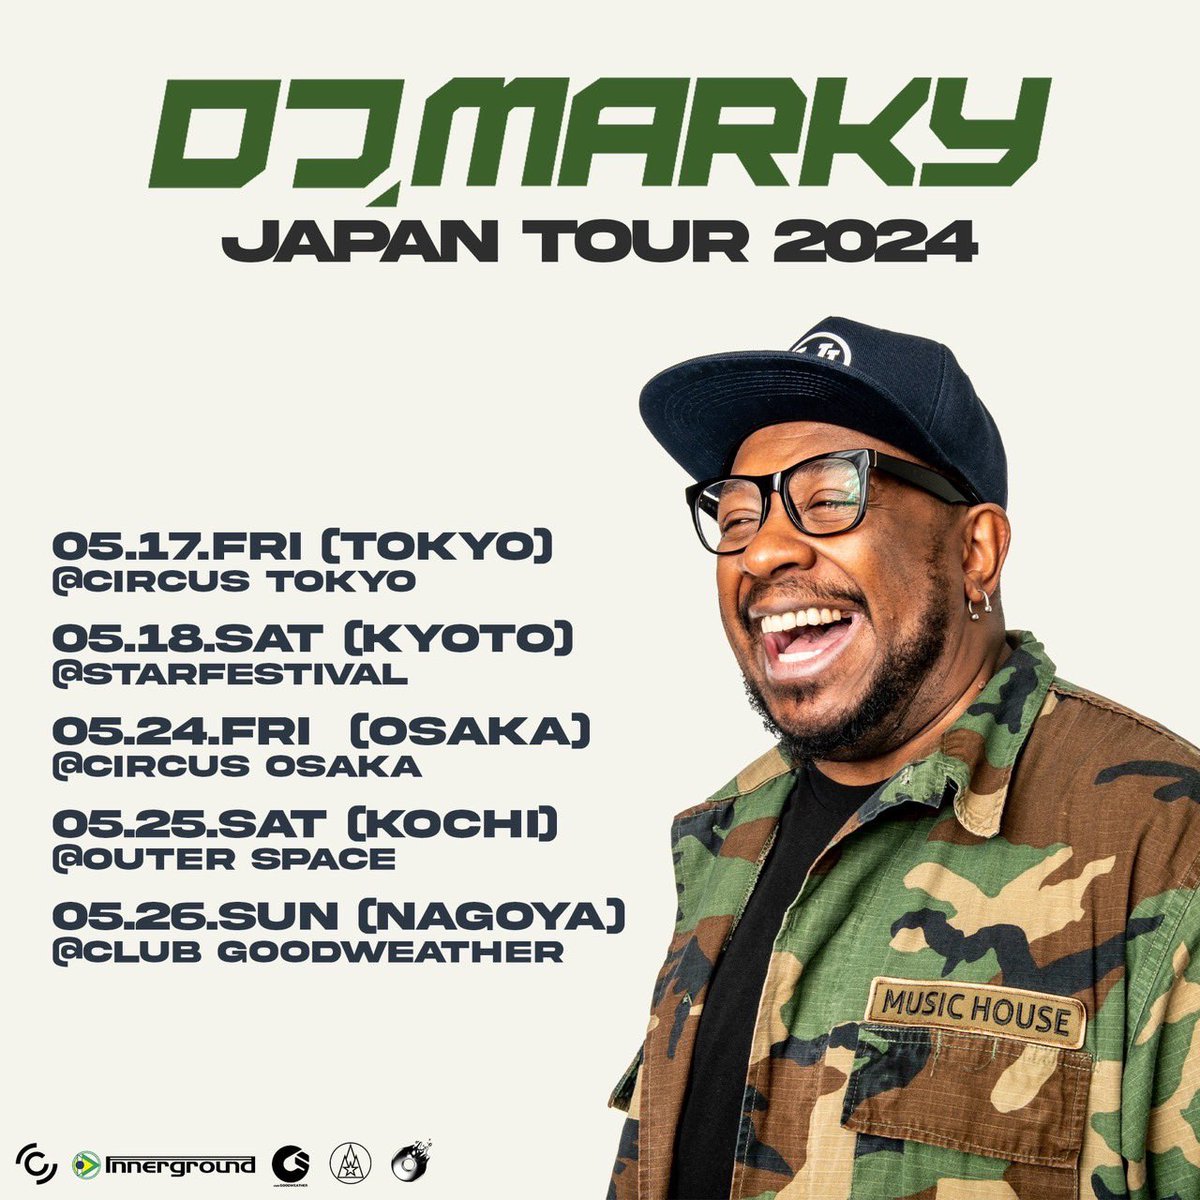 5/17 (金) より DJ Marky & Stamina MC Japan Tour がスタート!! 東京・京都・大阪・高知・名古屋の5都市で開催です( ※ DJ Marky のみの公演もございますので各都市の詳細をご確認ください)。 東京は、5/17 (金) に Circus Tokyo で HE がサポート。 チケット発売中です! circus.zaiko.io/e/djmarkytokyo